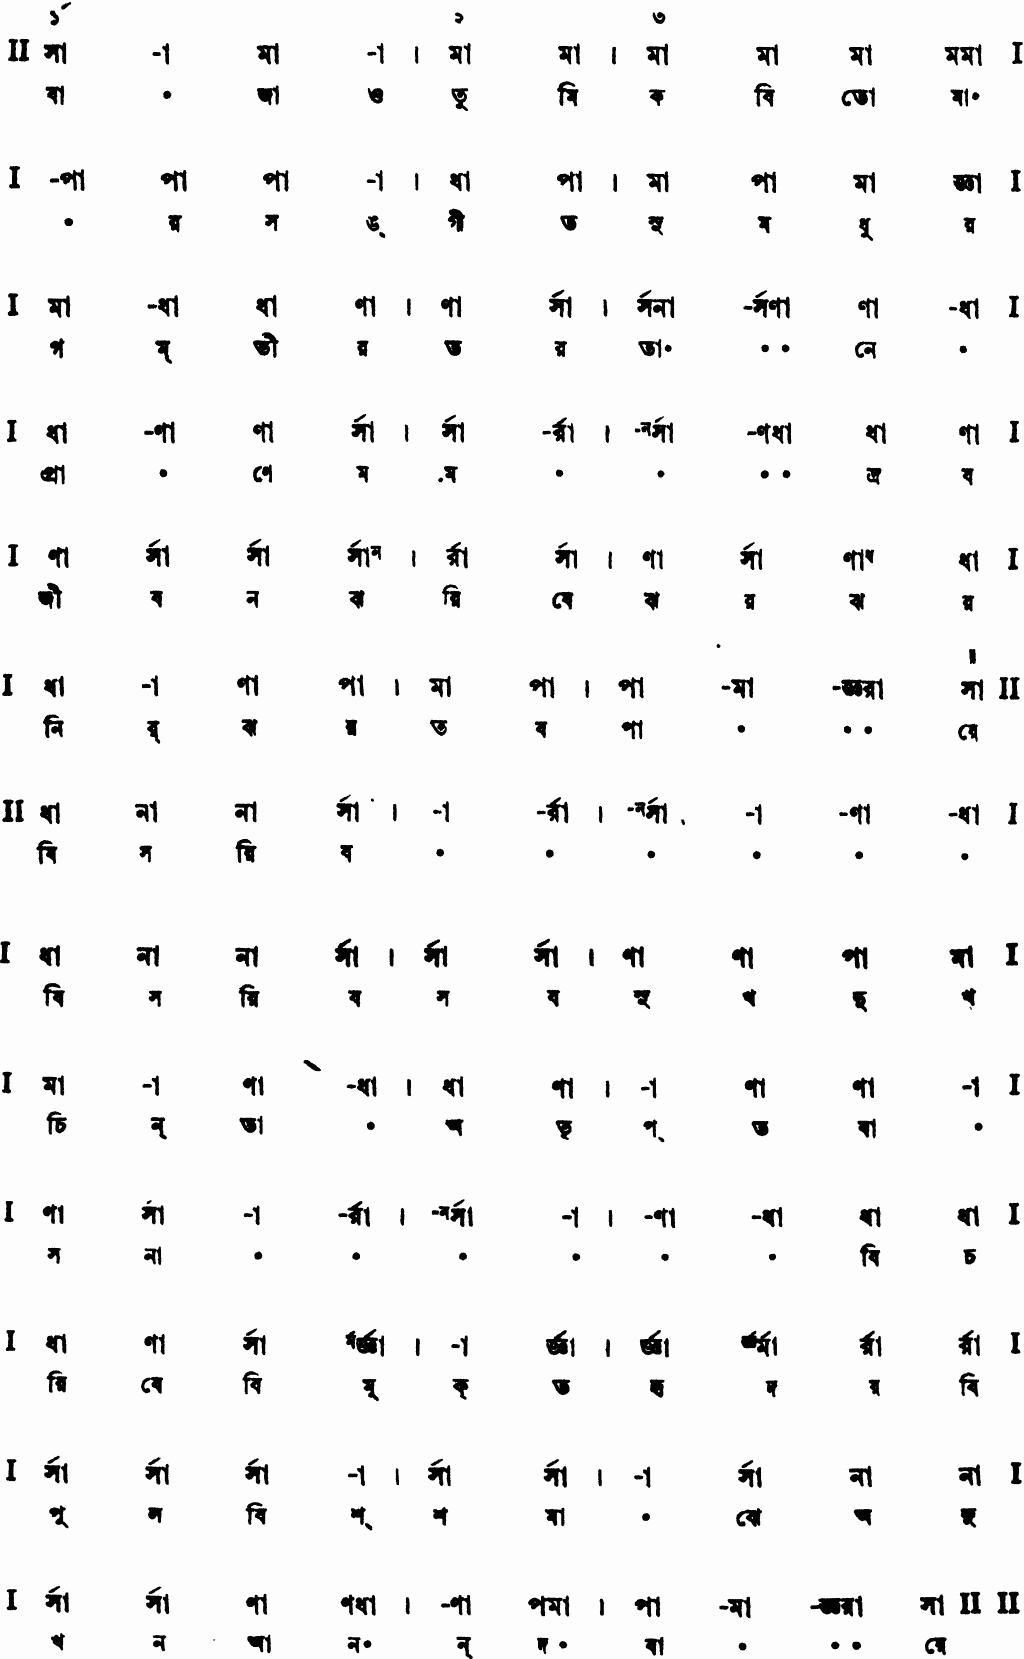 Notation bajao tumi kobi